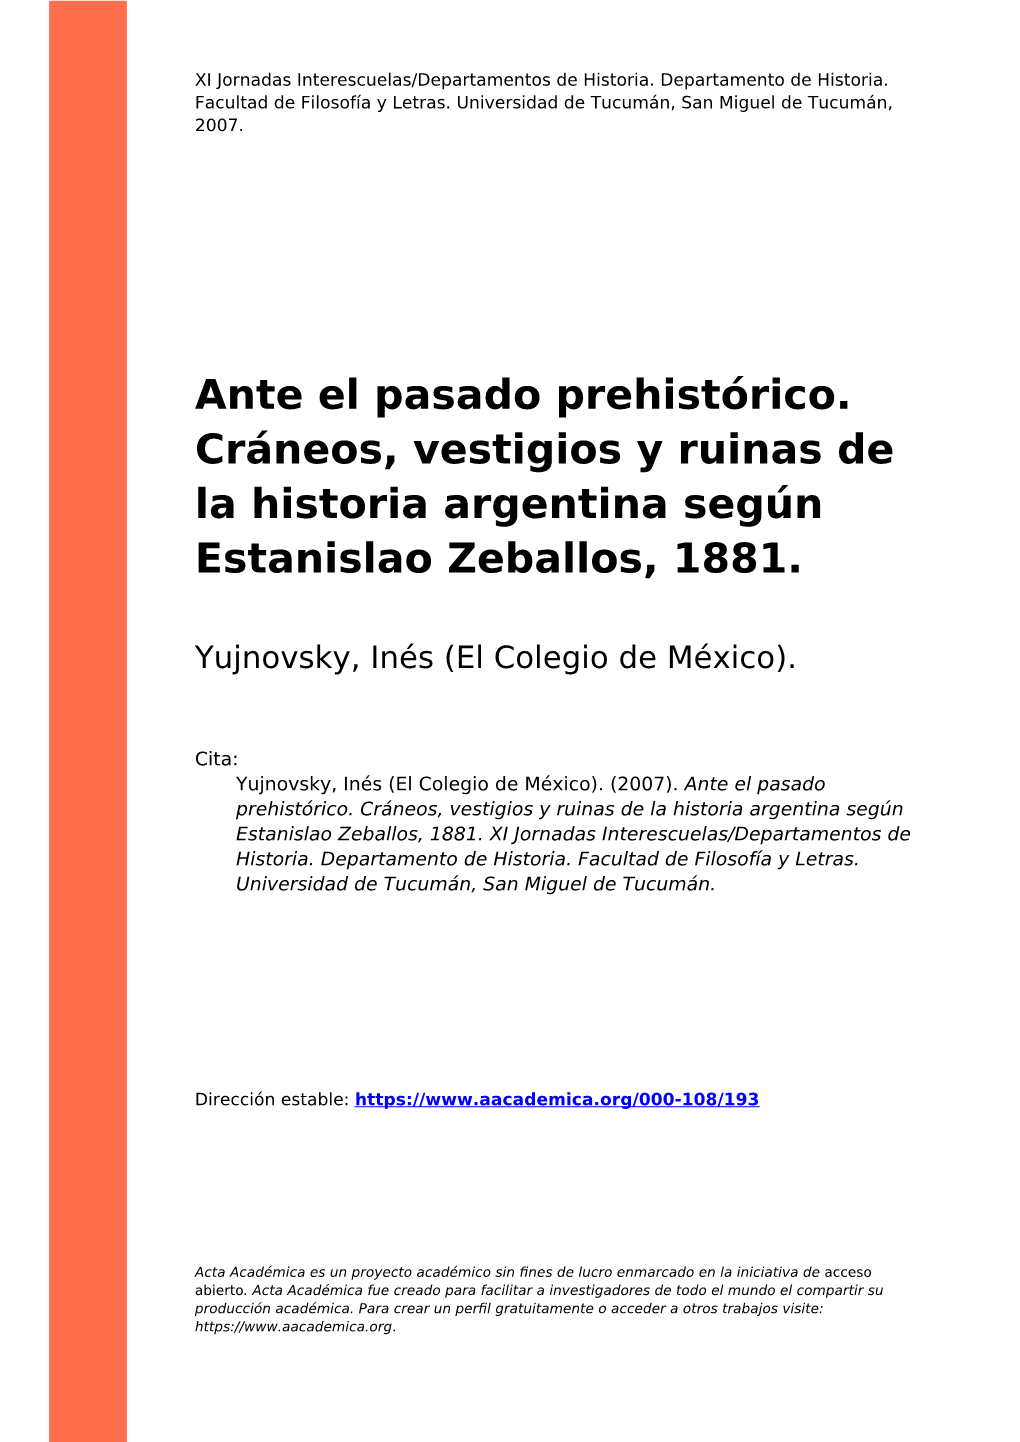 Ante El Pasado Prehistórico. Cráneos, Vestigios Y Ruinas De La Historia Argentina Según Estanislao Zeballos, 1881